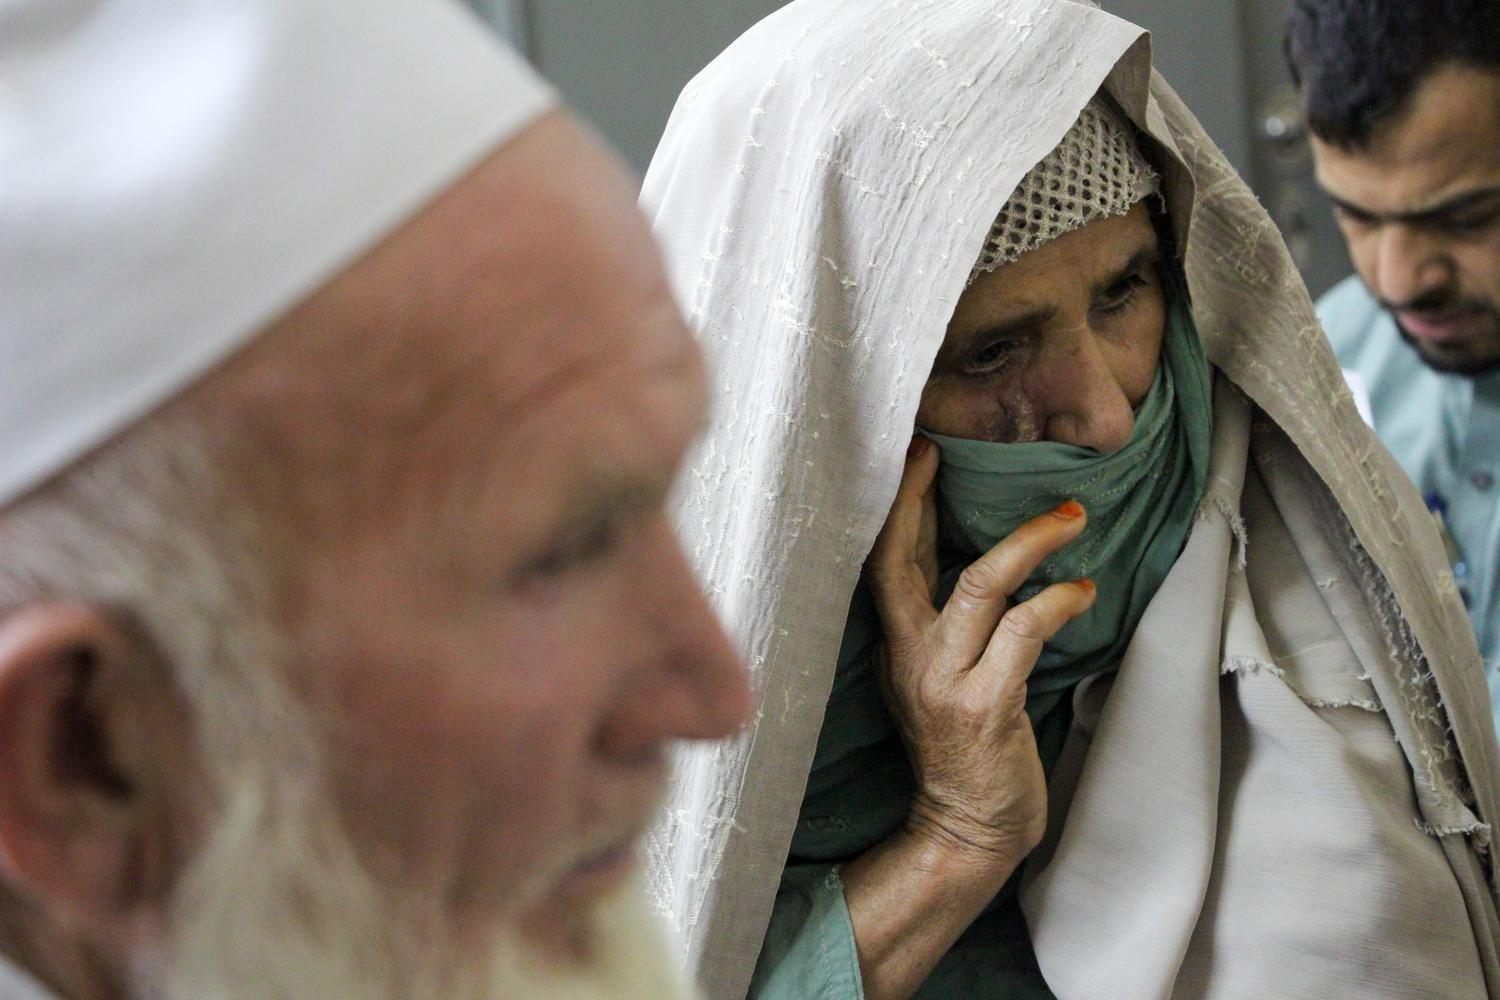  Une patiente atteinte de leishmaniose cutanée arrive avec son mari dans les locaux de MSF à l’hôpital mémorial Naseerullah Khan Babar, à Peshawar, au Pakistan. Juin 2019. 